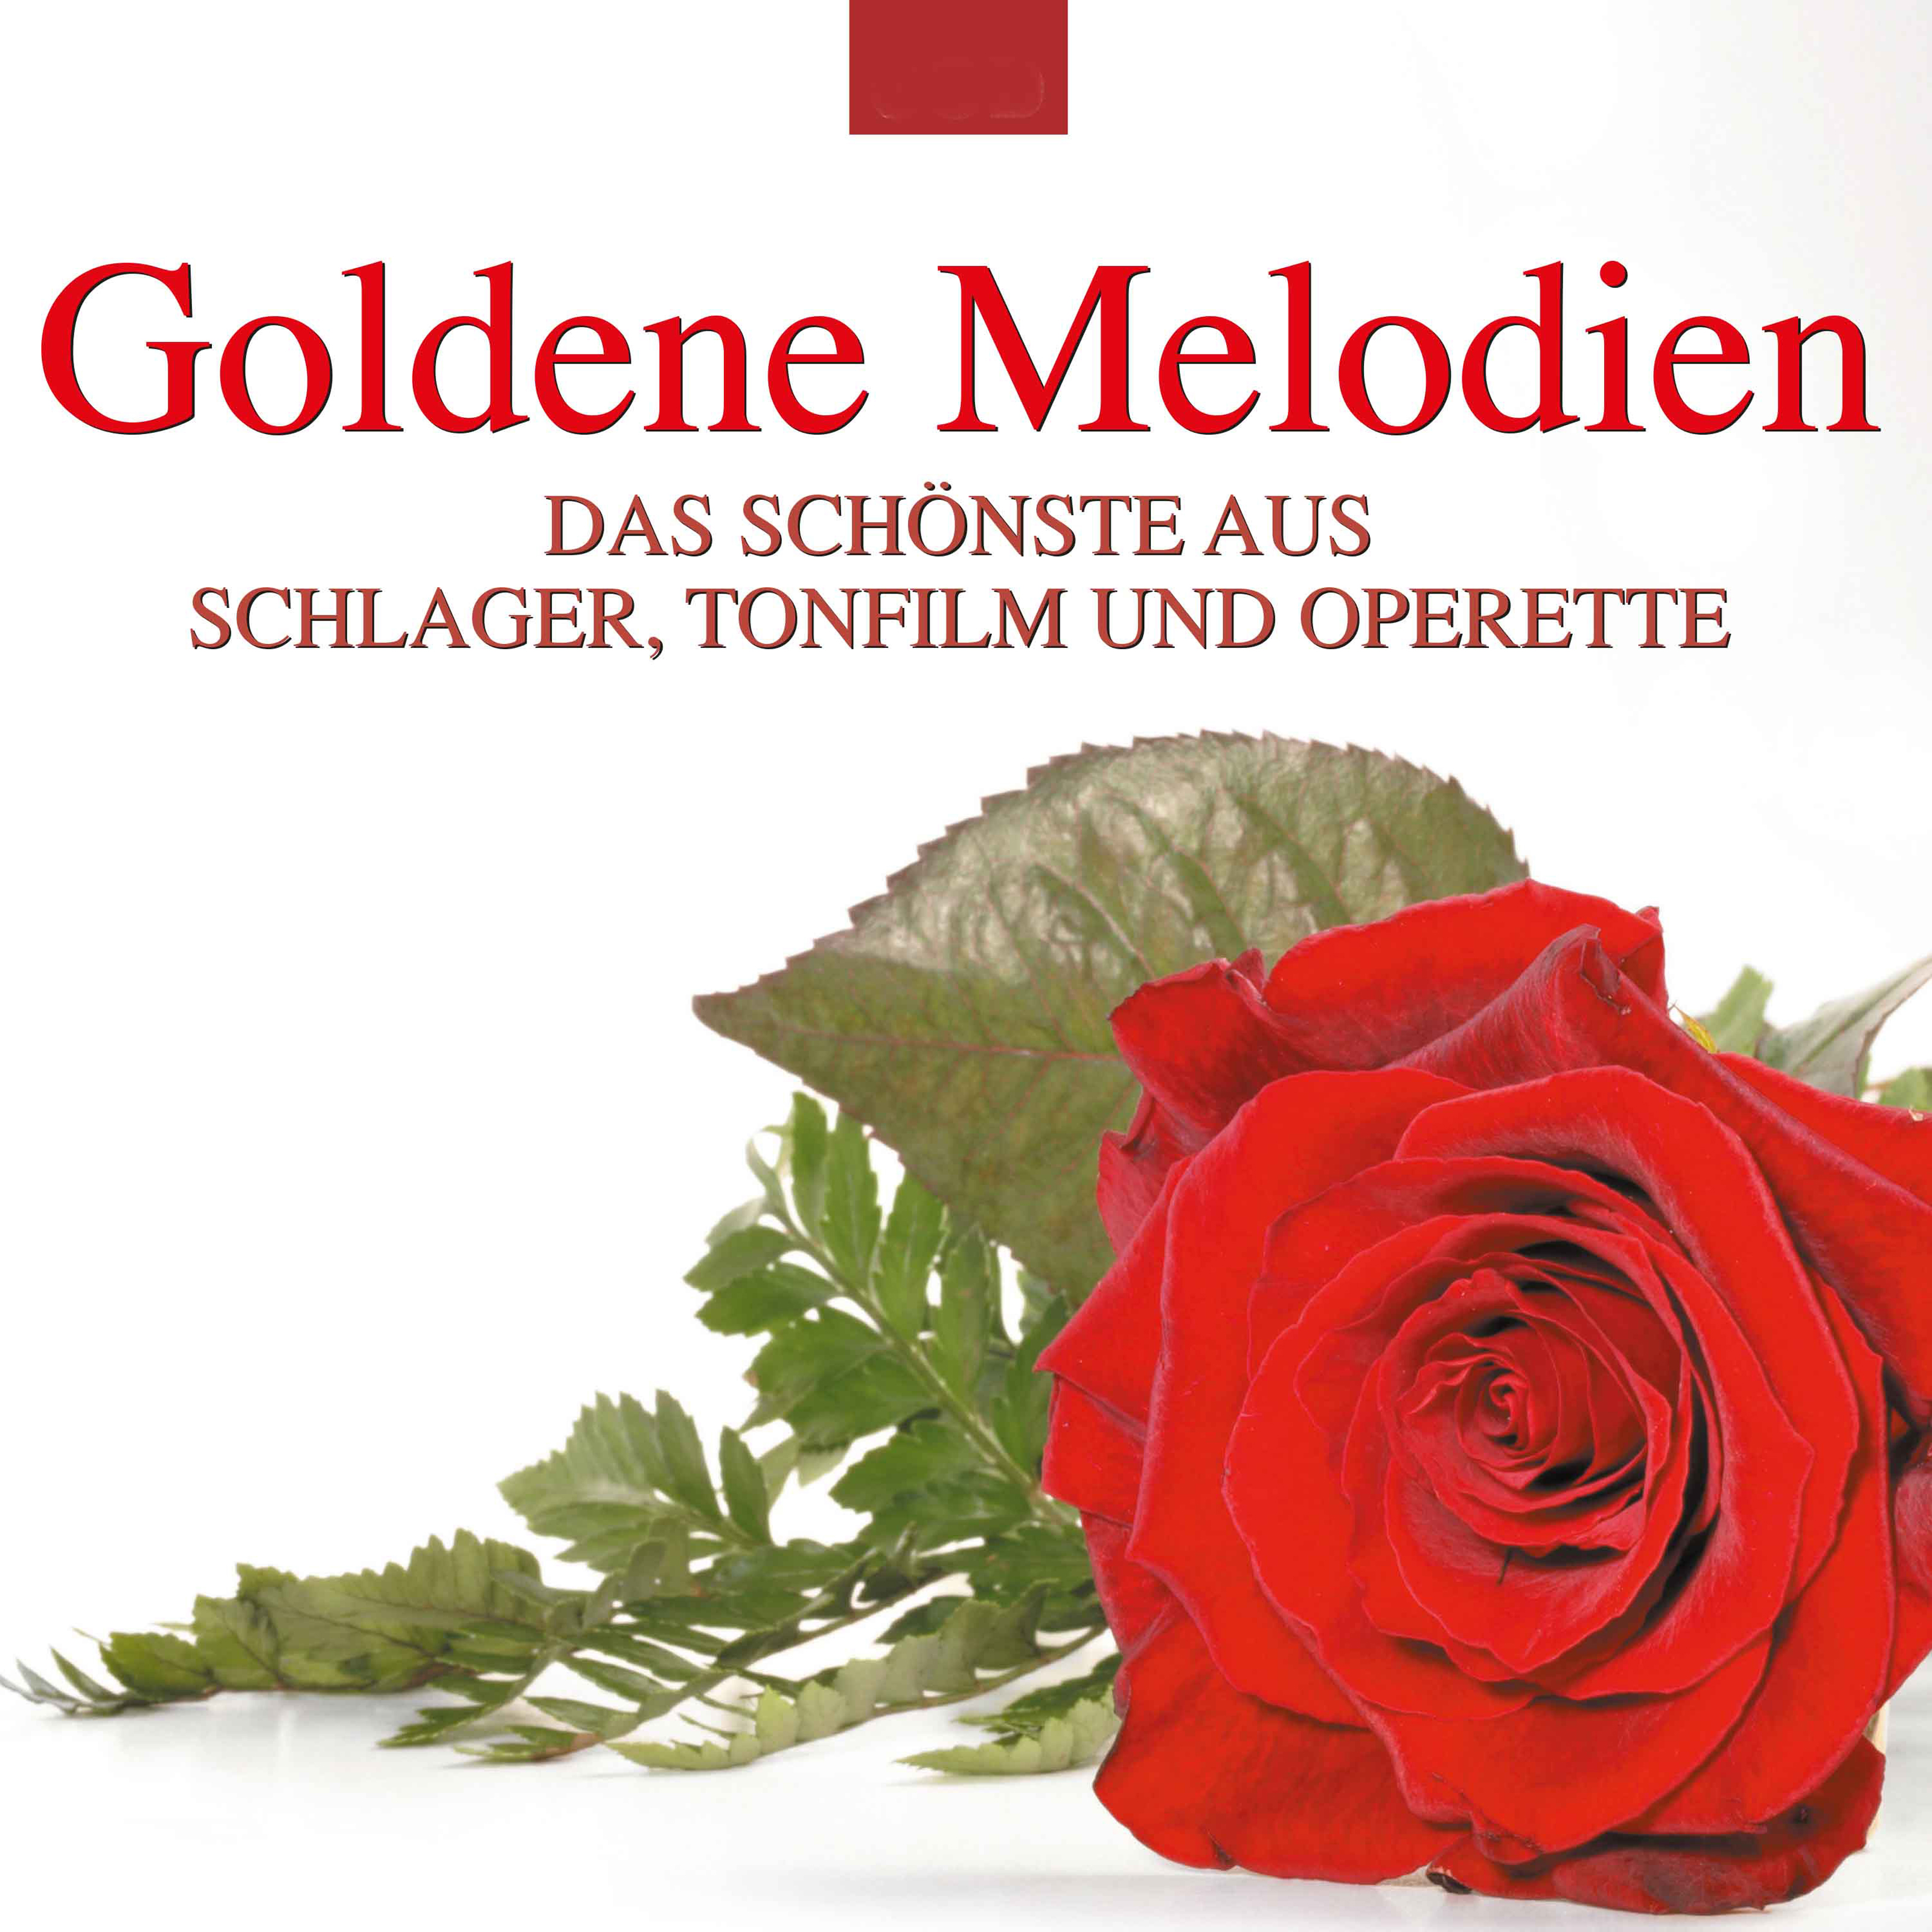 Goldene Melodien: Das Sch nste aus Schlager, Tonfilm und Operette